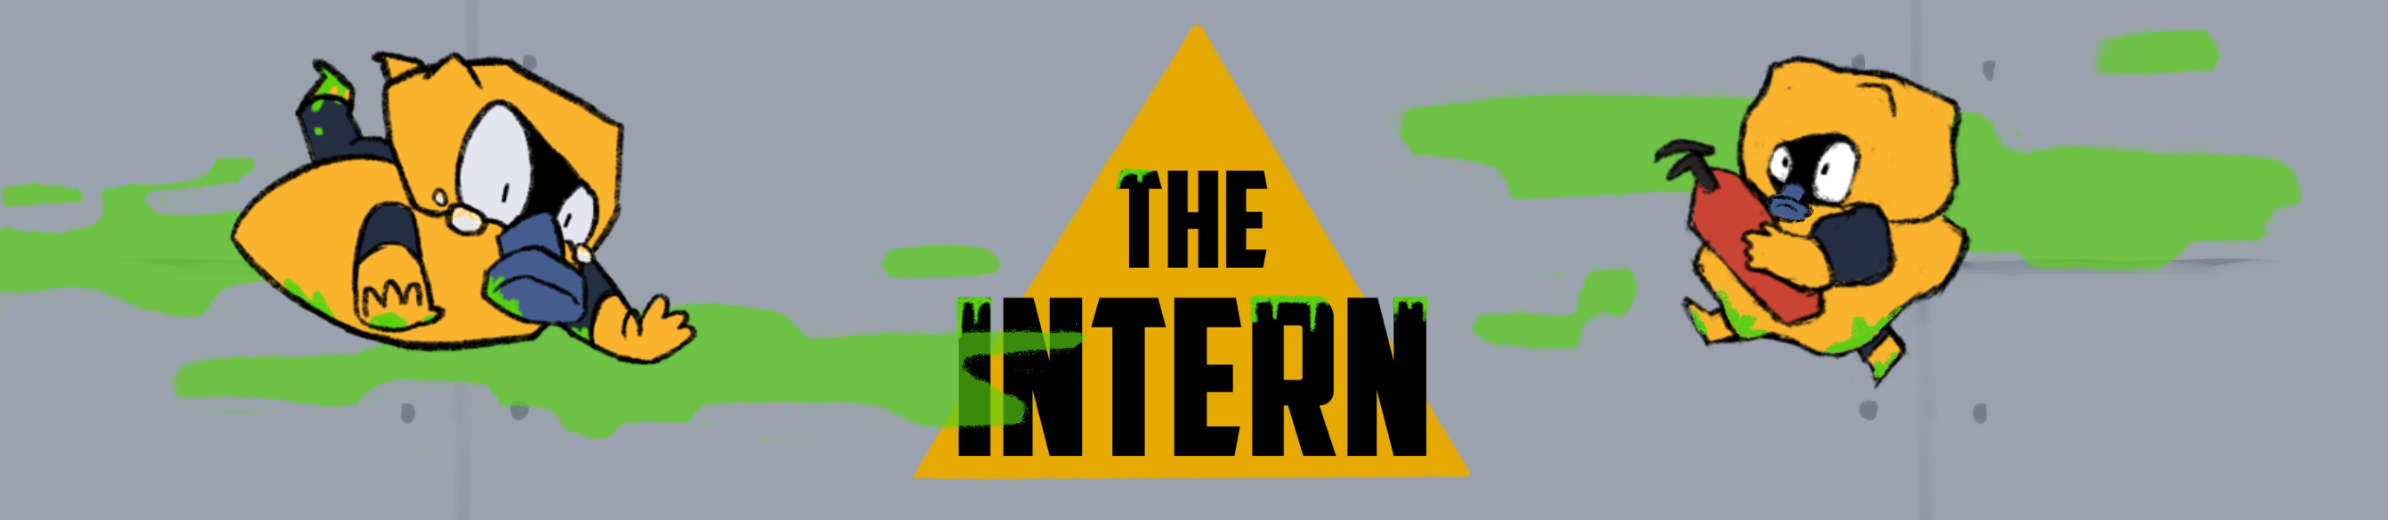 The Intern